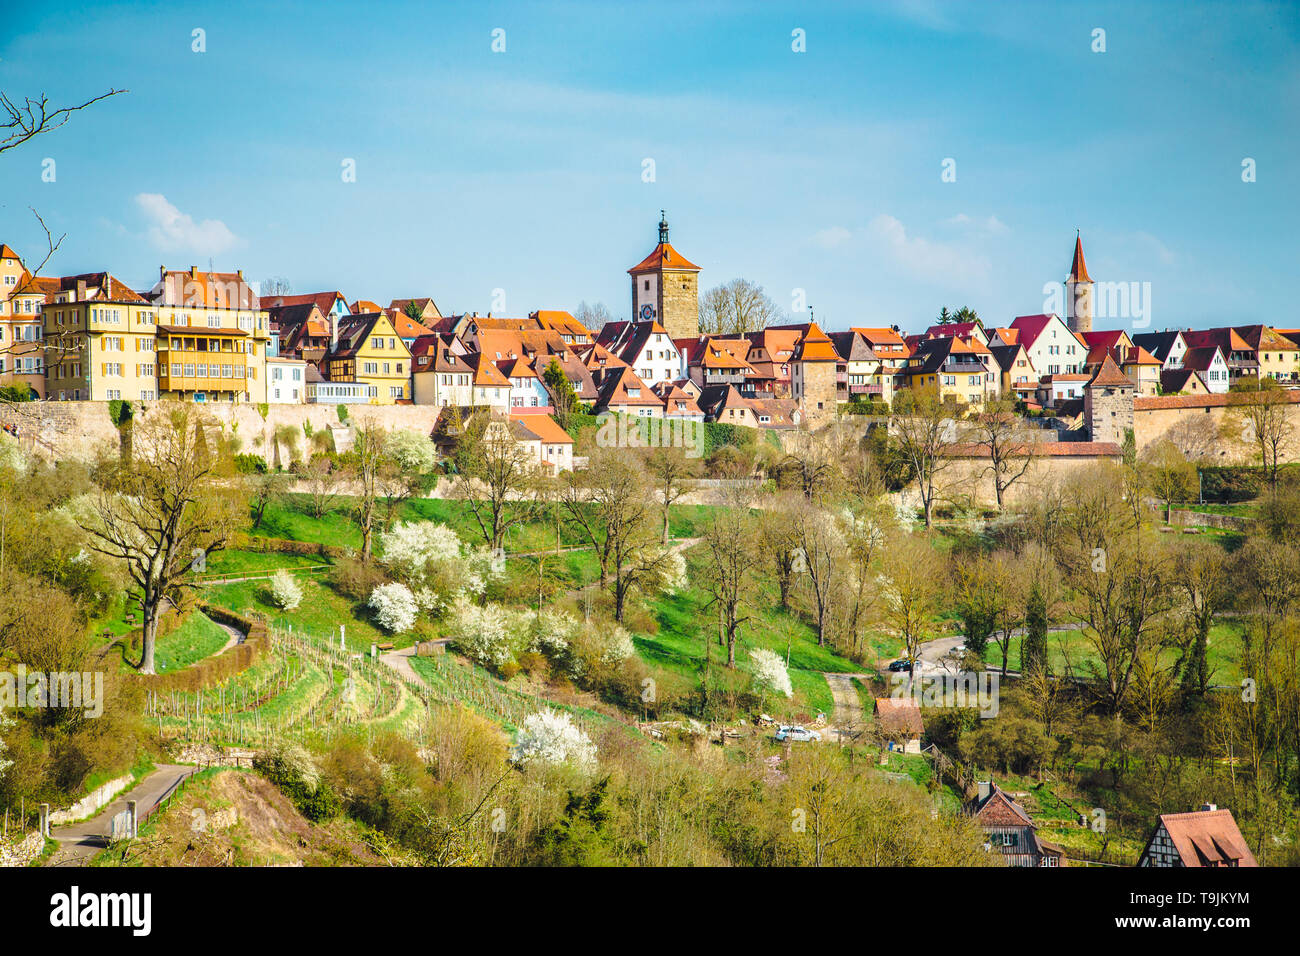 Visualizzazione classica della città medievale di Rothenburg ob der Tauber su una bella giornata di sole con cielo blu e nuvole in primavera, Baviera, Germania Foto Stock